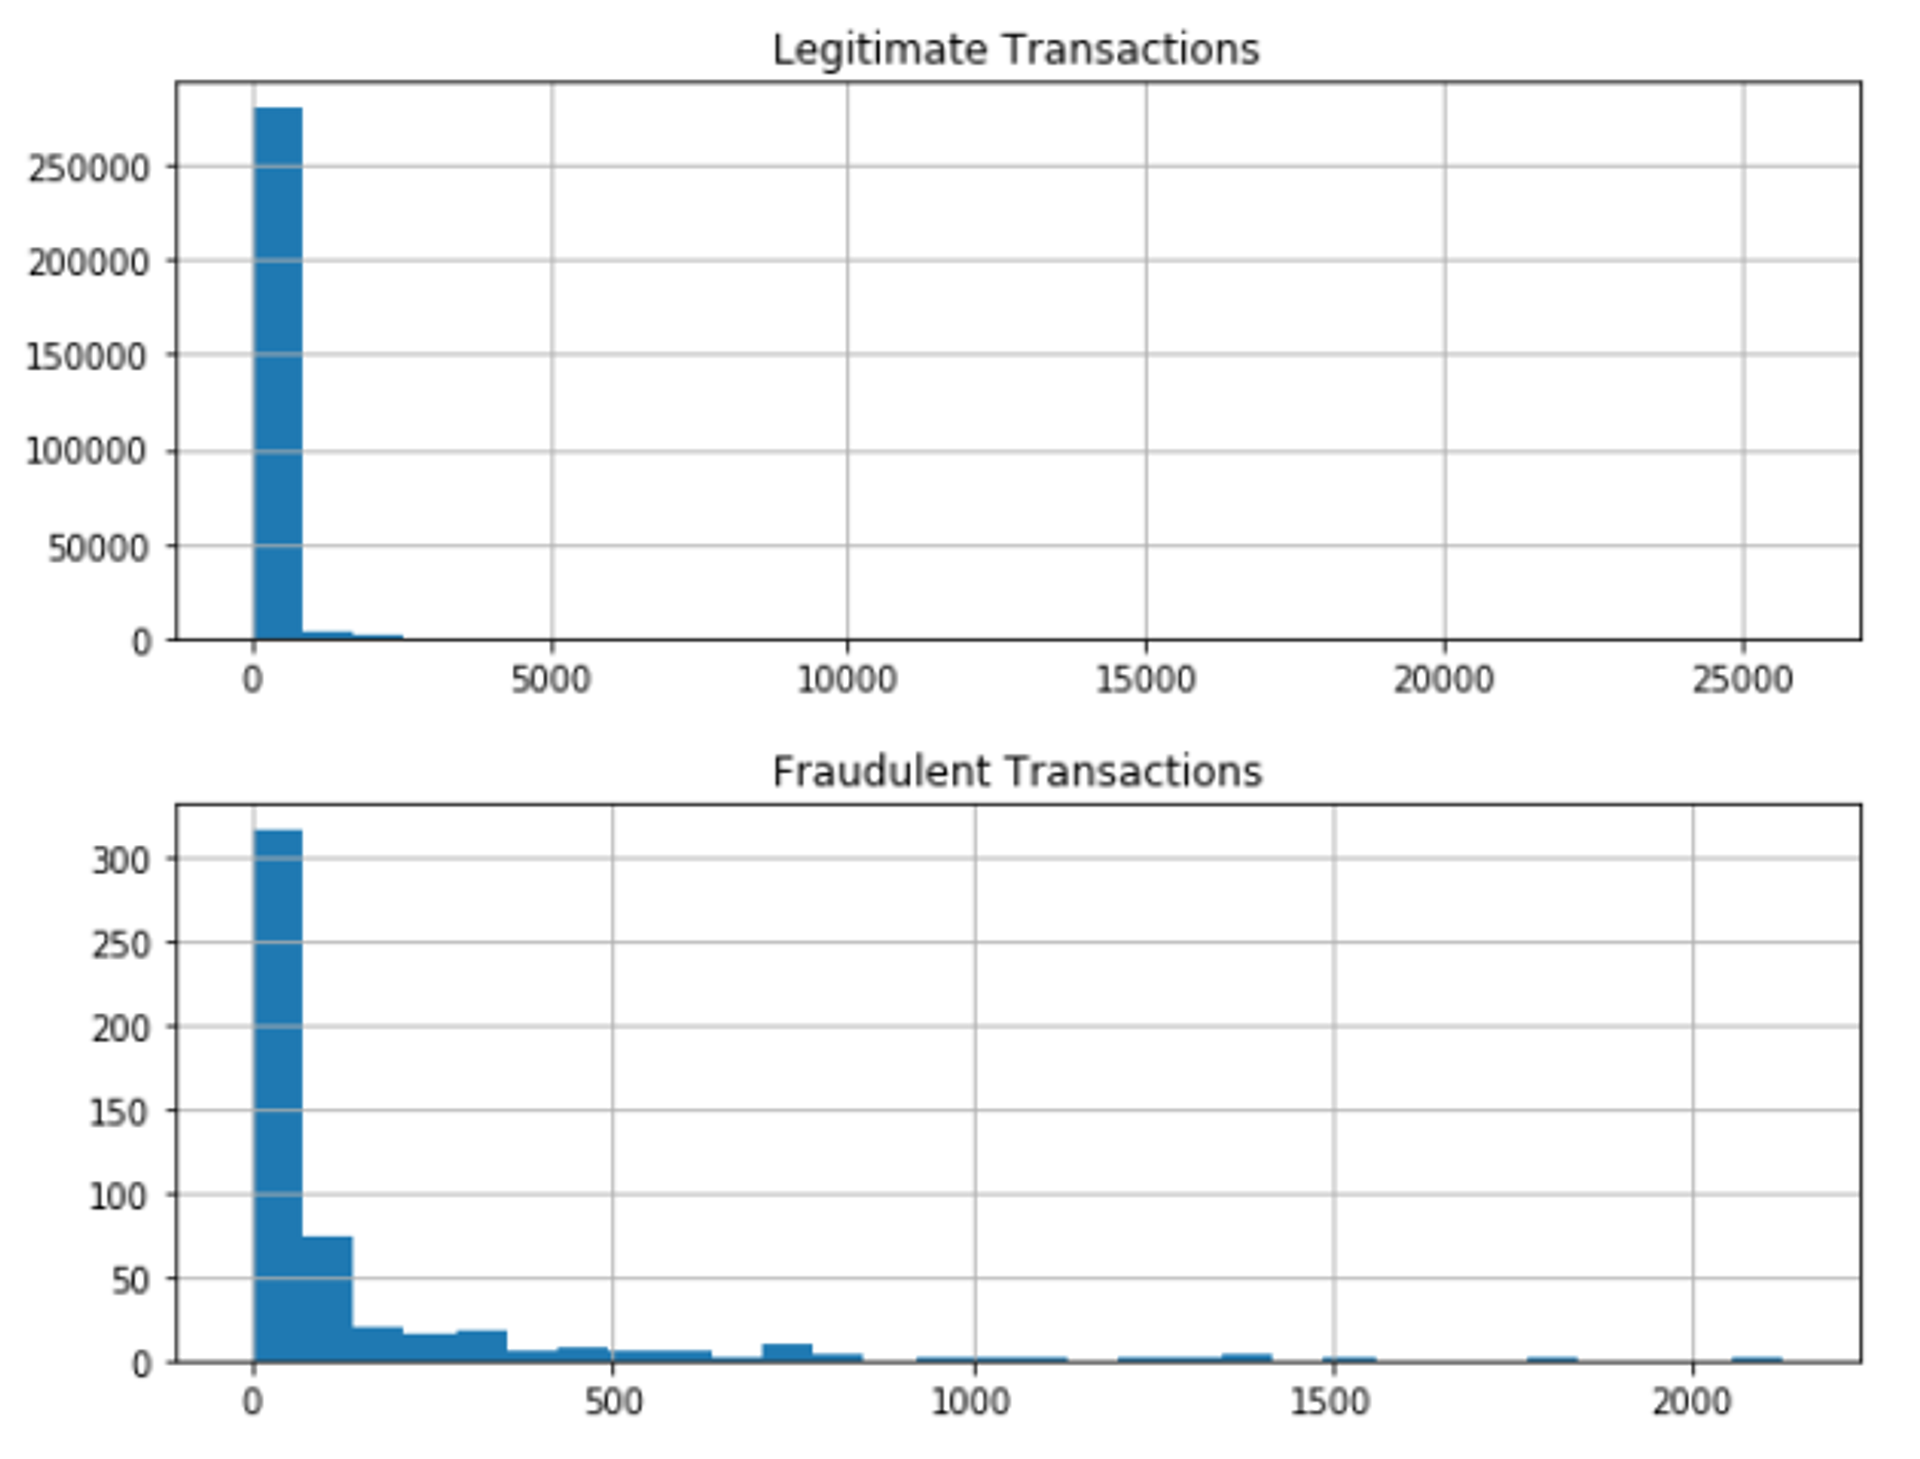 Distributions for fraudulent vs legitimate transactions based on Time